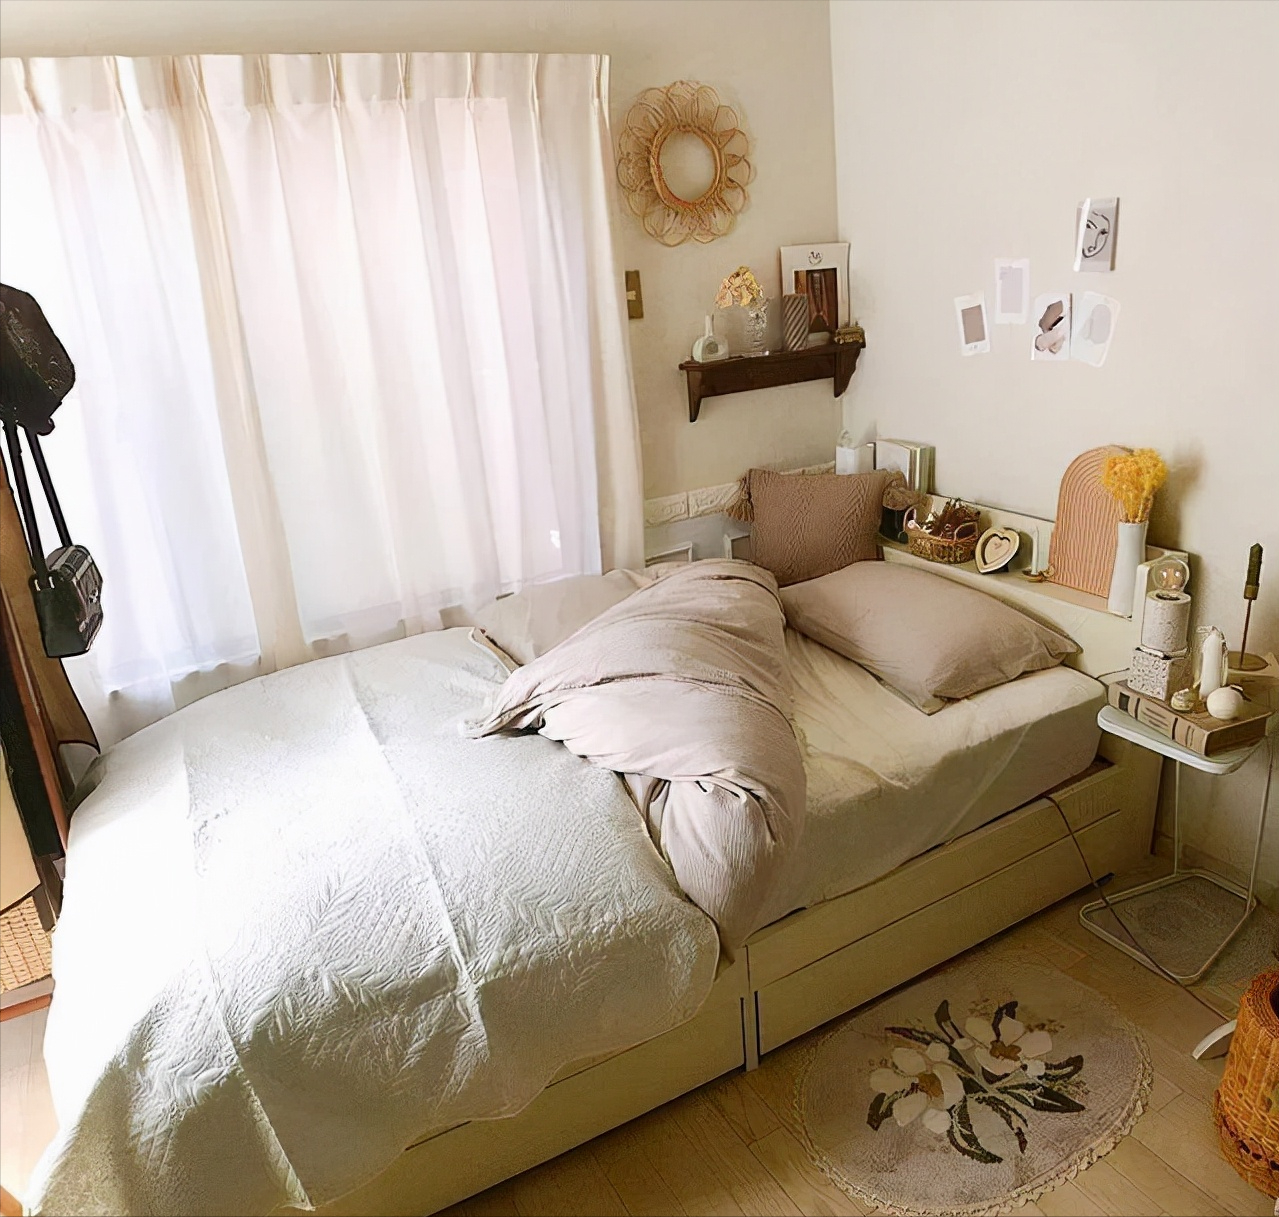 日本女生的卧室家装大公开,房间整洁,画风舒适,晒照温馨又养眼